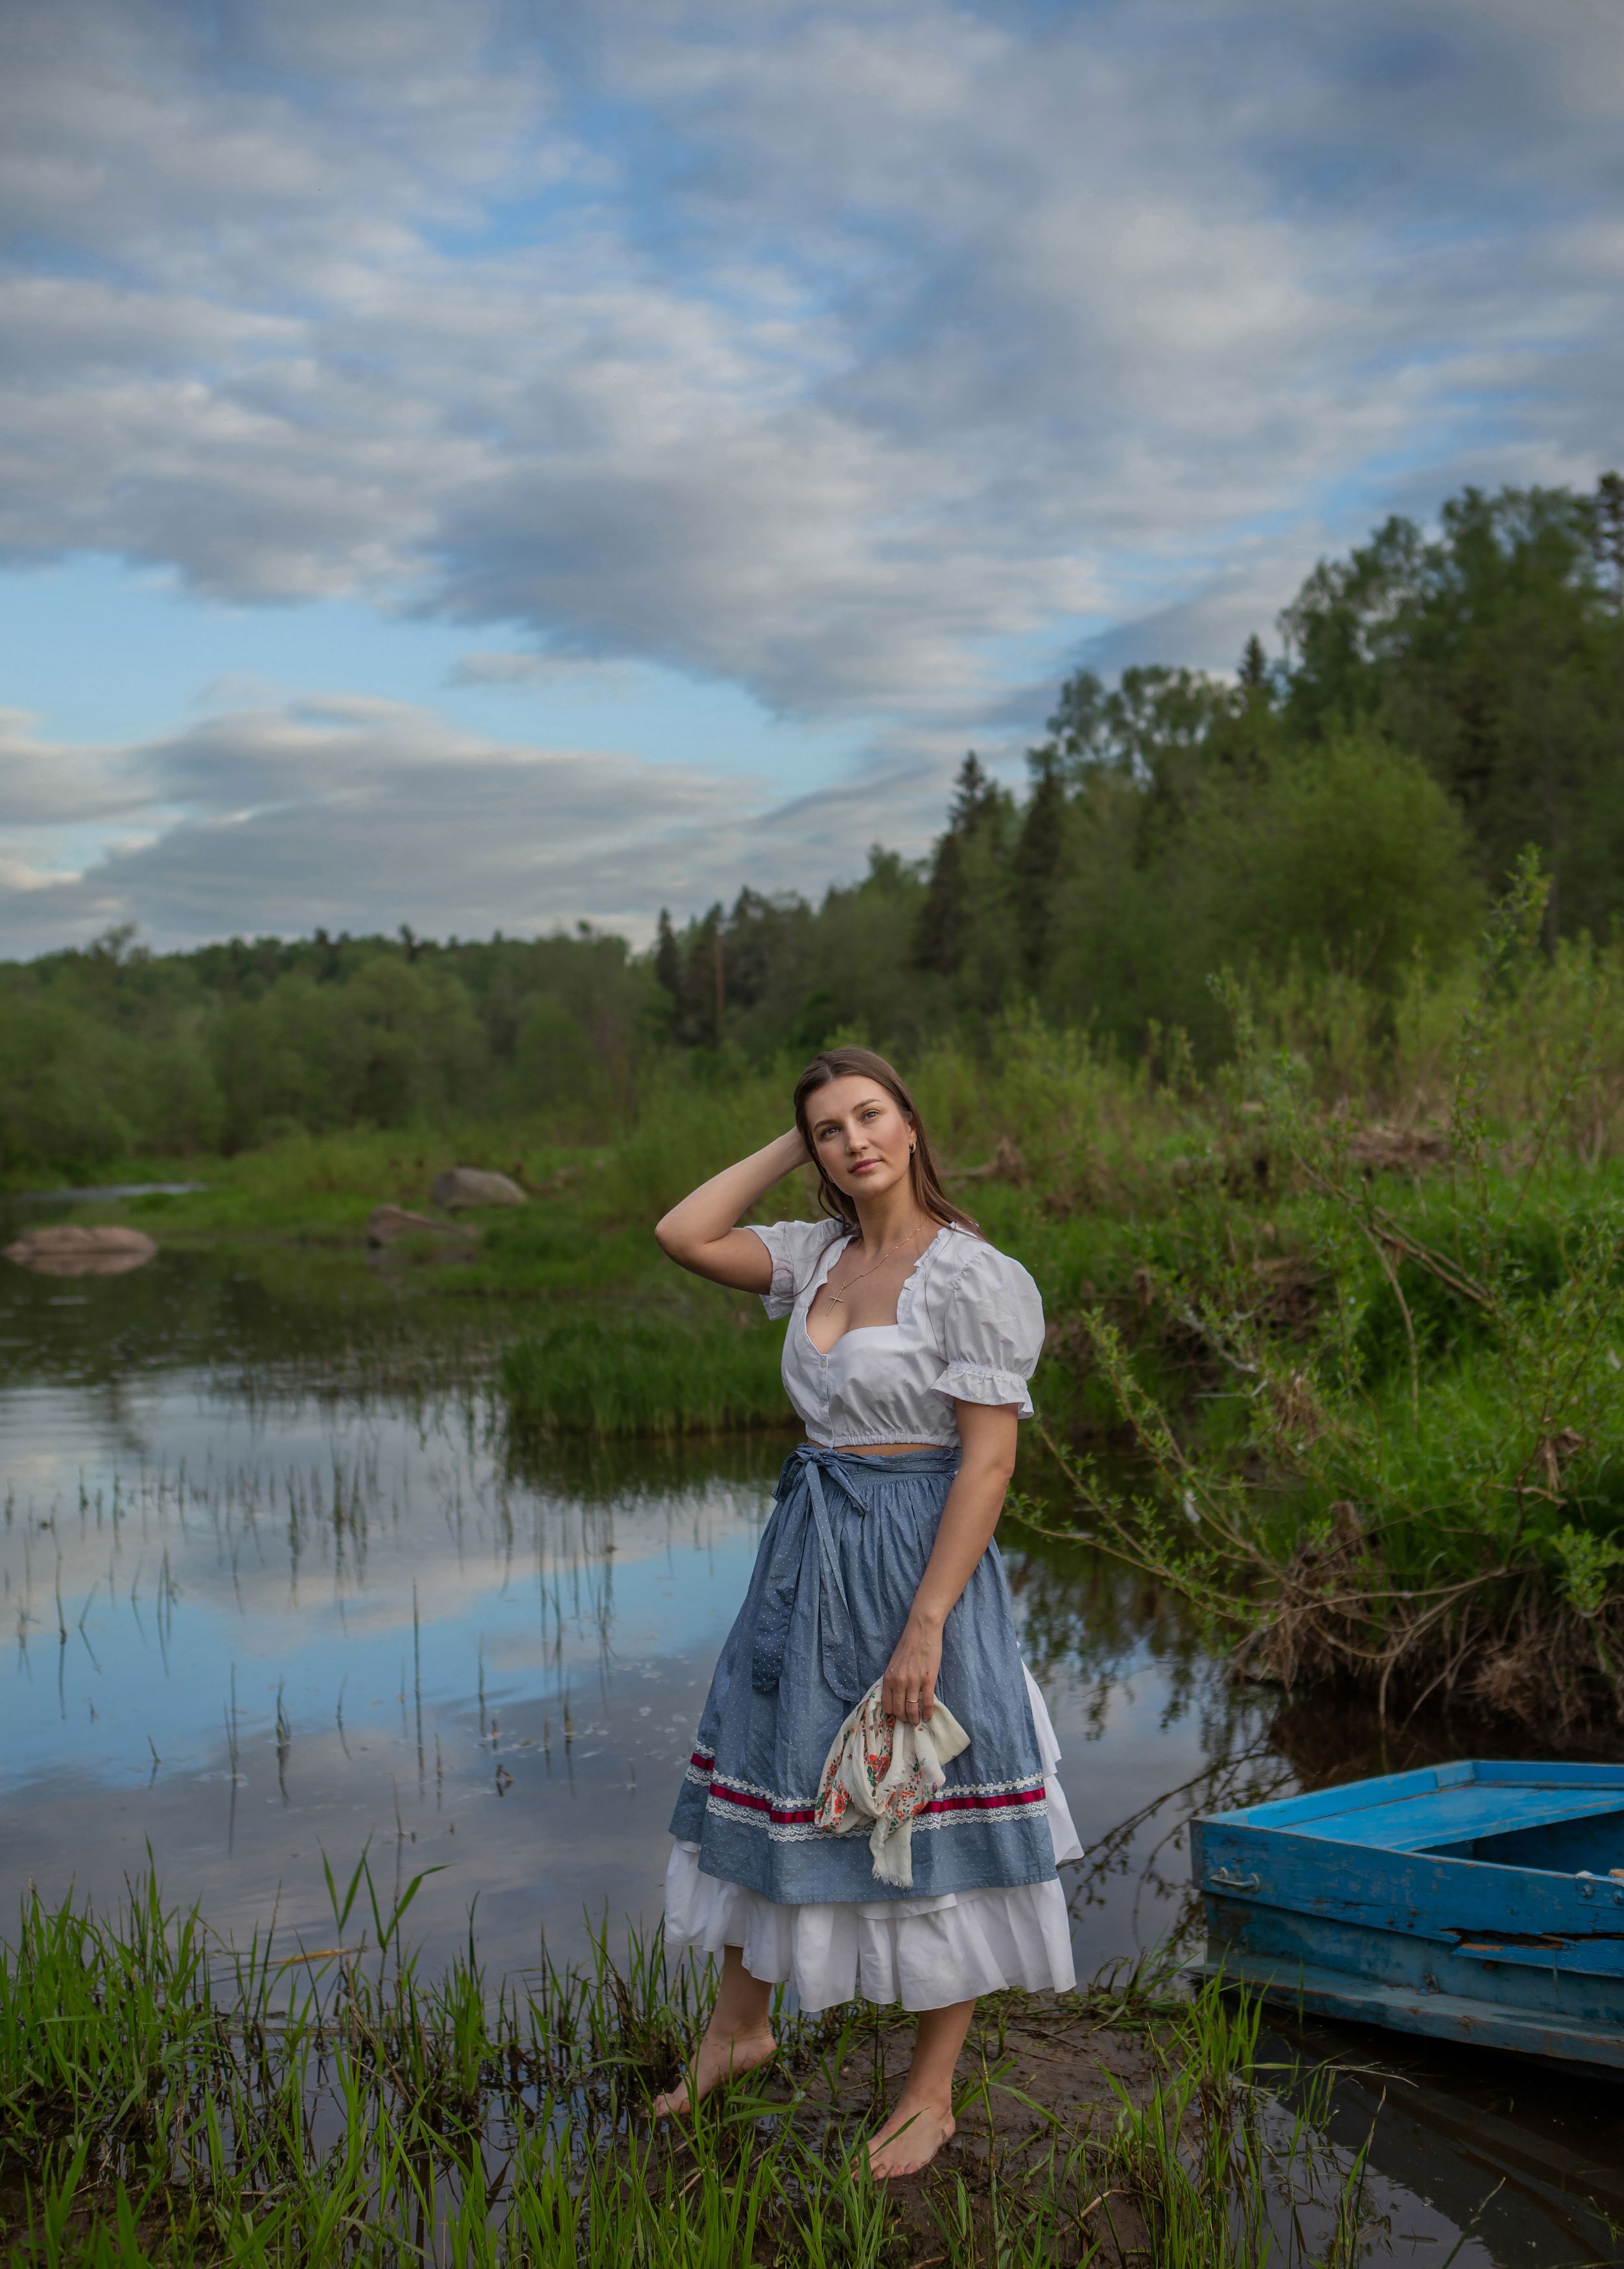 река девушка красота любовь природа искусство фотография покой радость лодка облака вода небо, Татьяна Шепелева